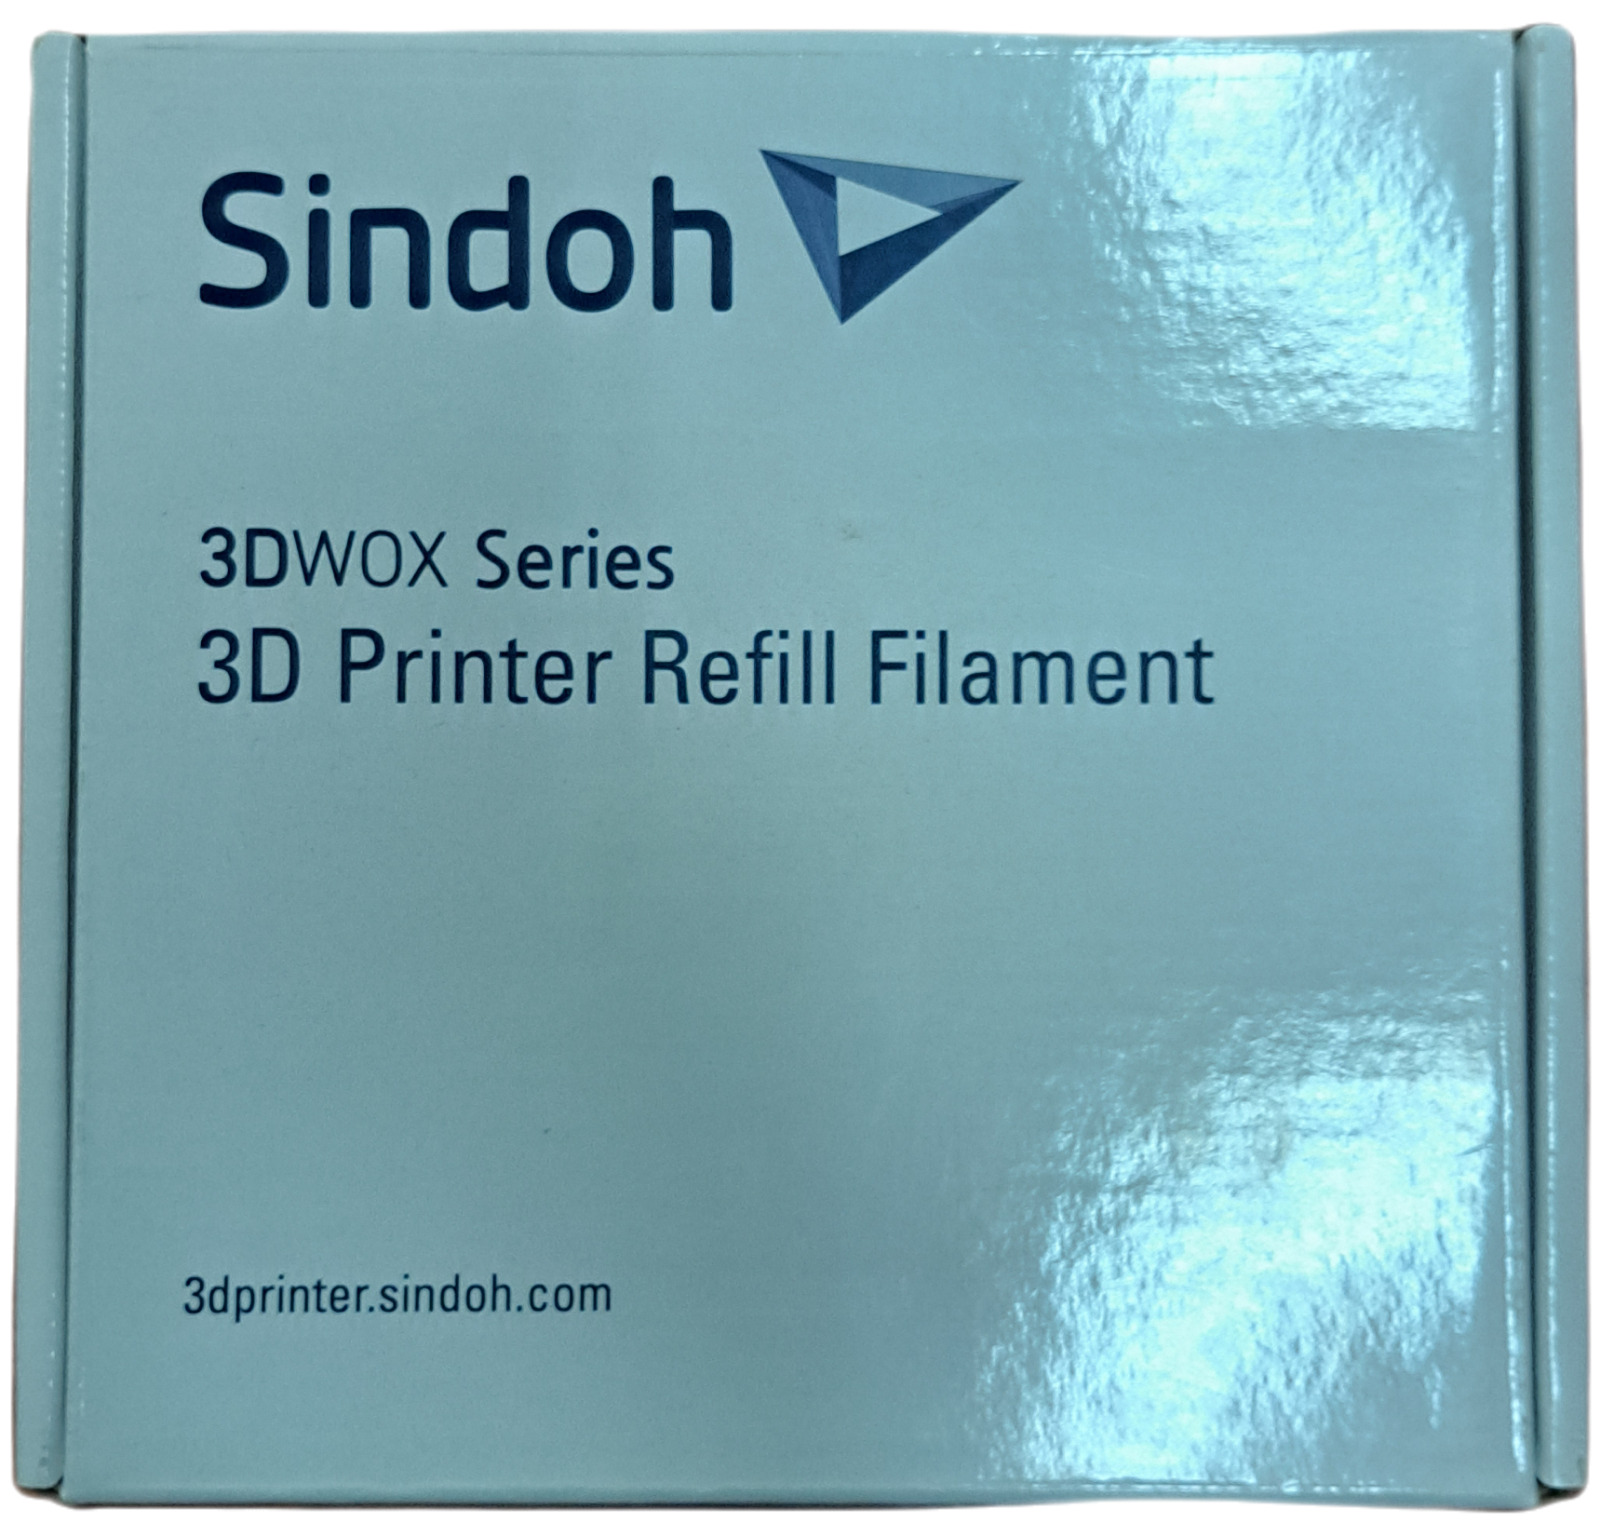 Sindoh 3DWOX Series 3D Printer Refill Filament- Blue ABS 1.5mm 600g